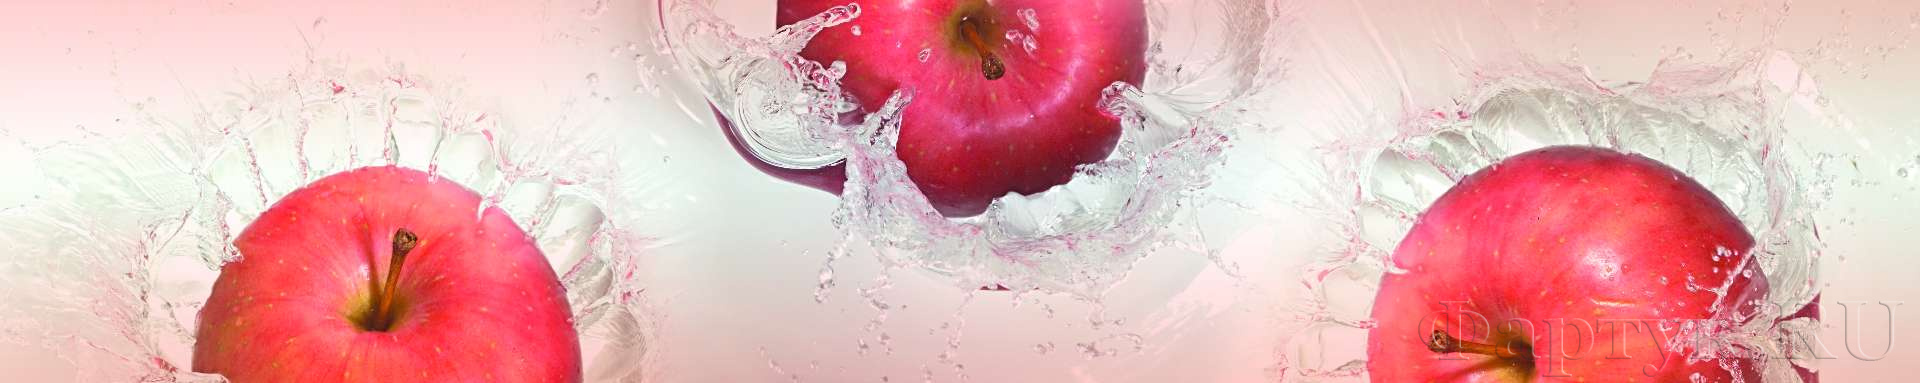 Красные яблоки в воде